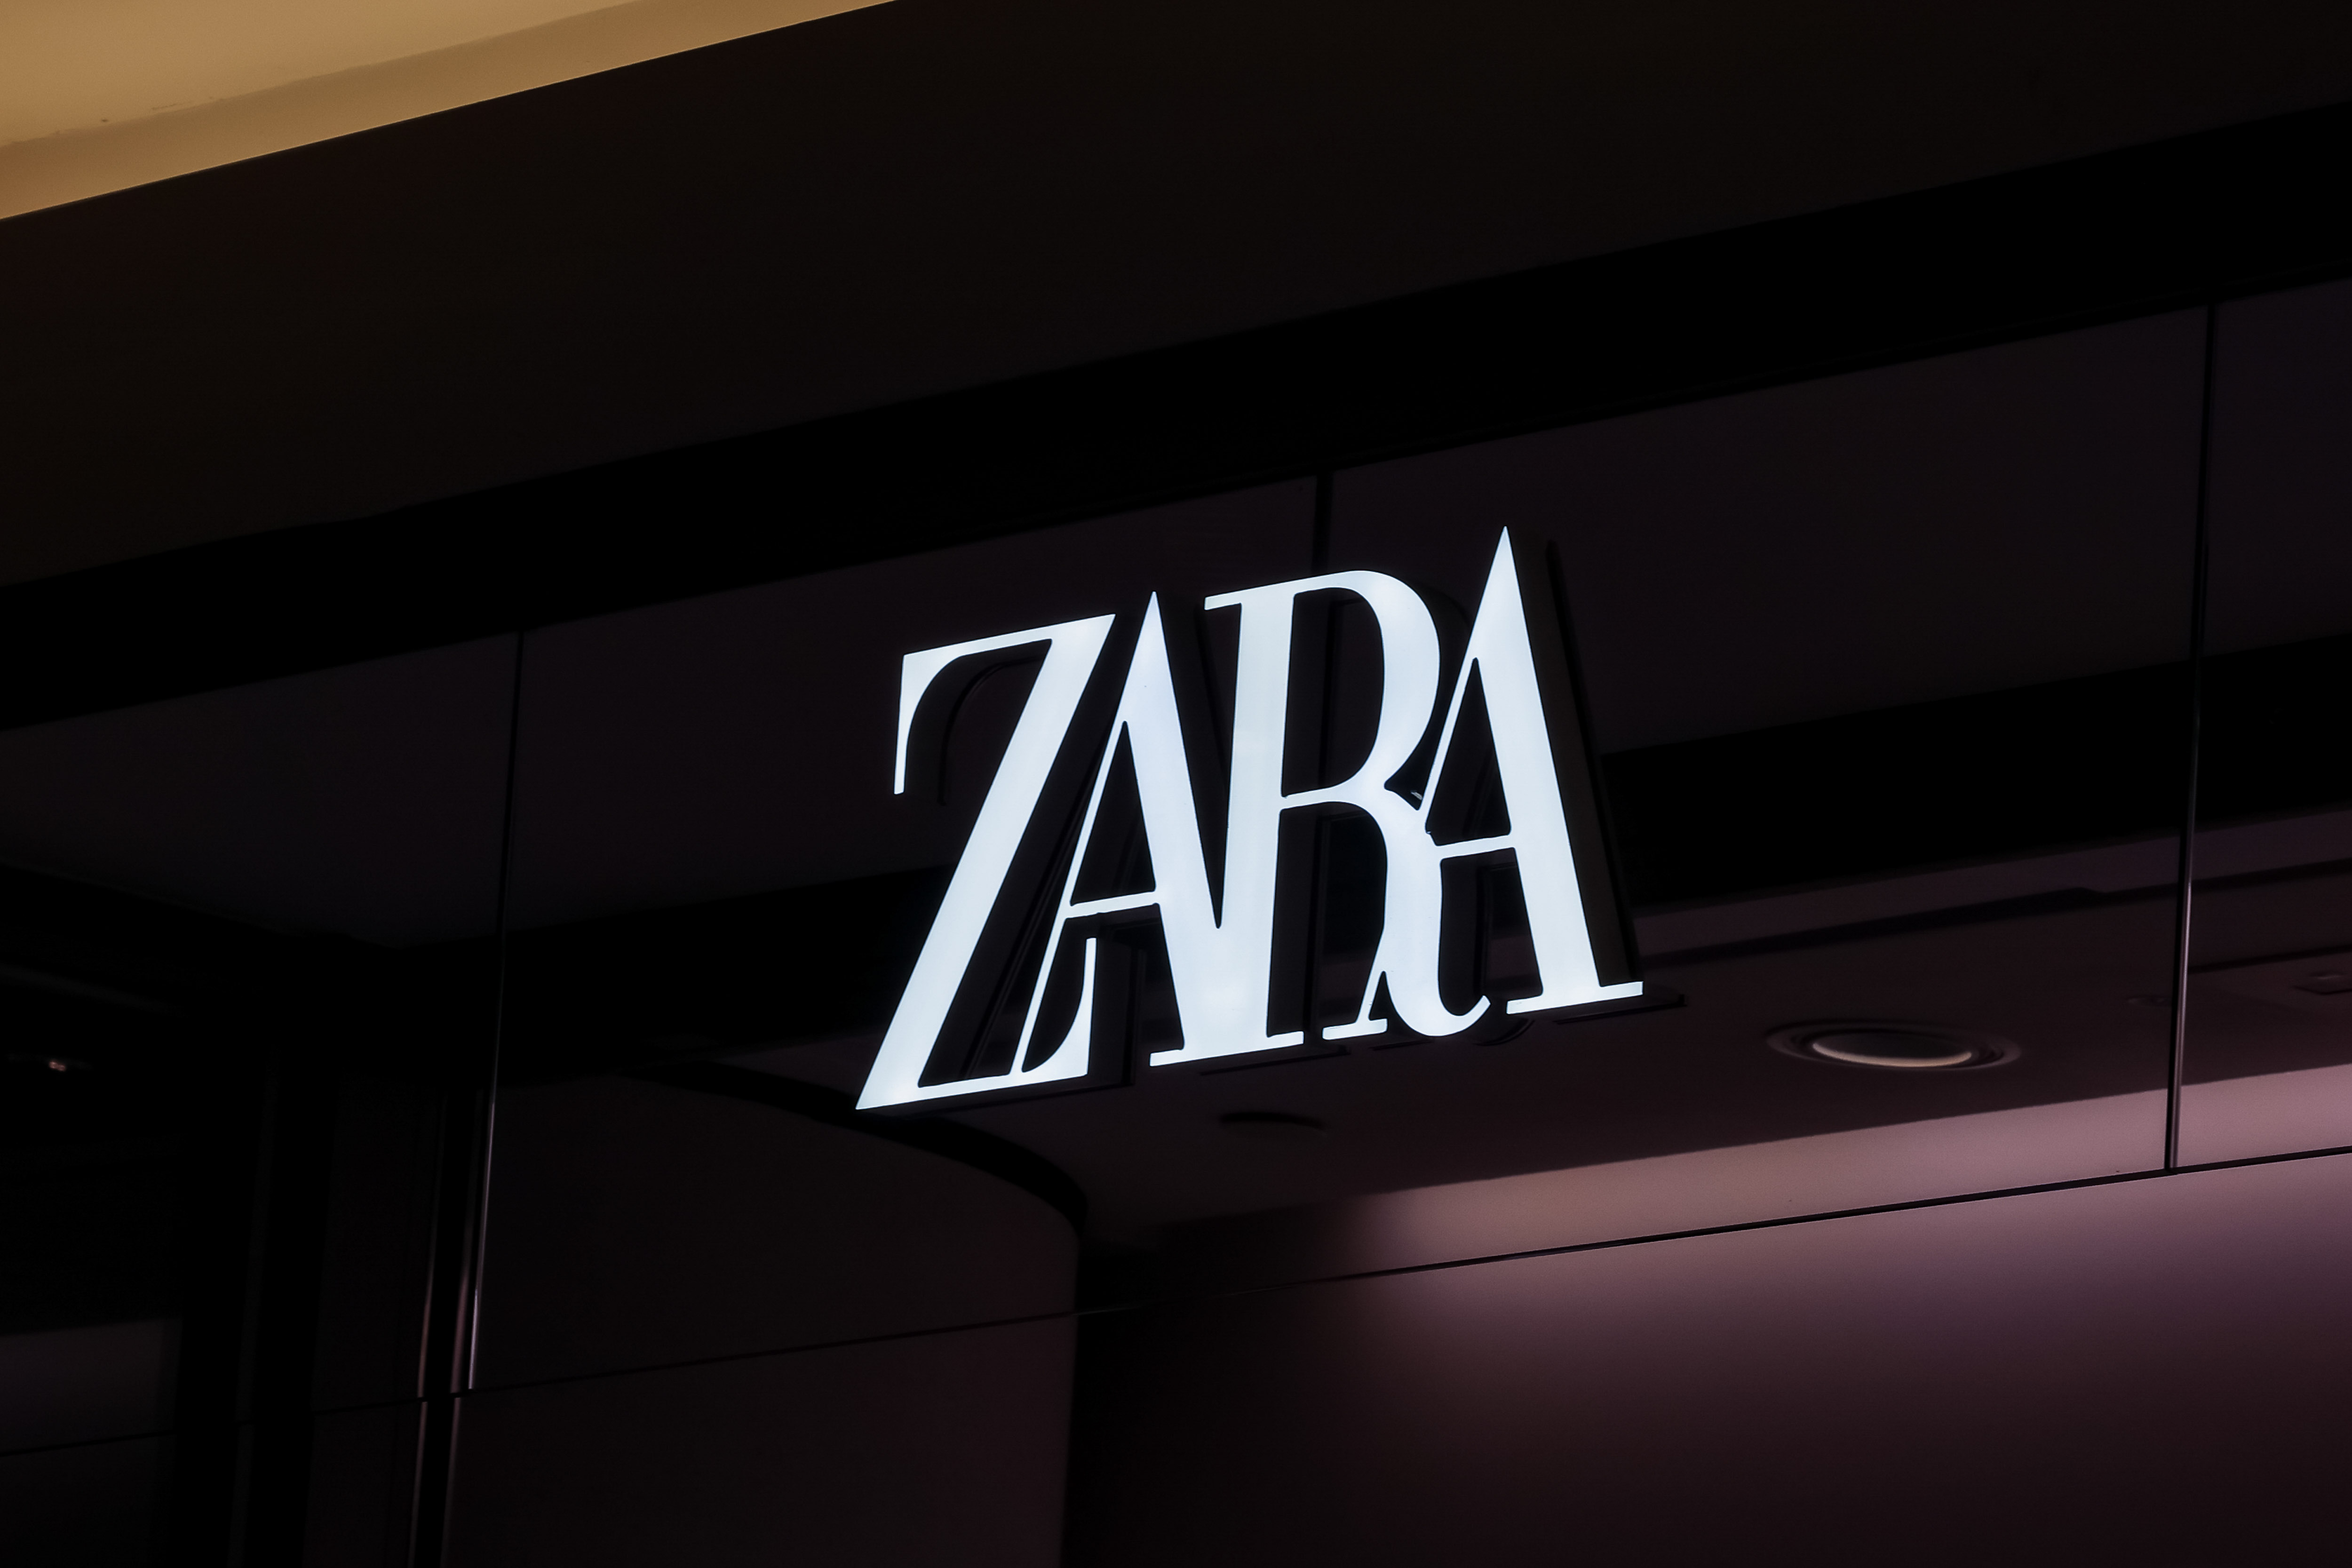 Logo de una tienda Zara del grupo Inditex